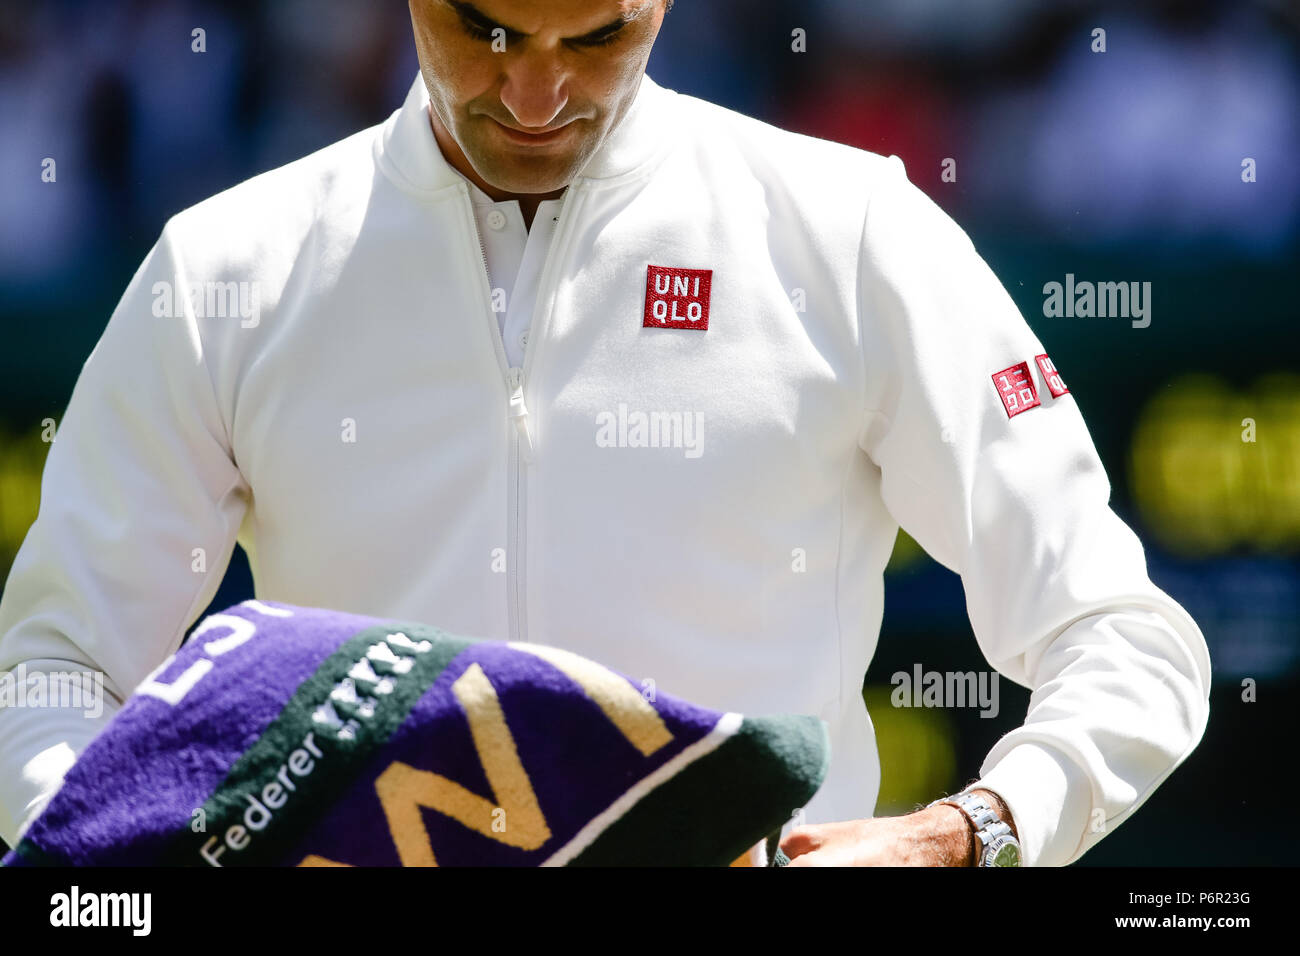 Londres, Reino Unido, 2 de julio de 2018: Roger Federer de Suiza lleva ropa  de marca japonesa desde su nueva guía Uniqlo durante el día 1 en los  Campeonatos de Tenis de